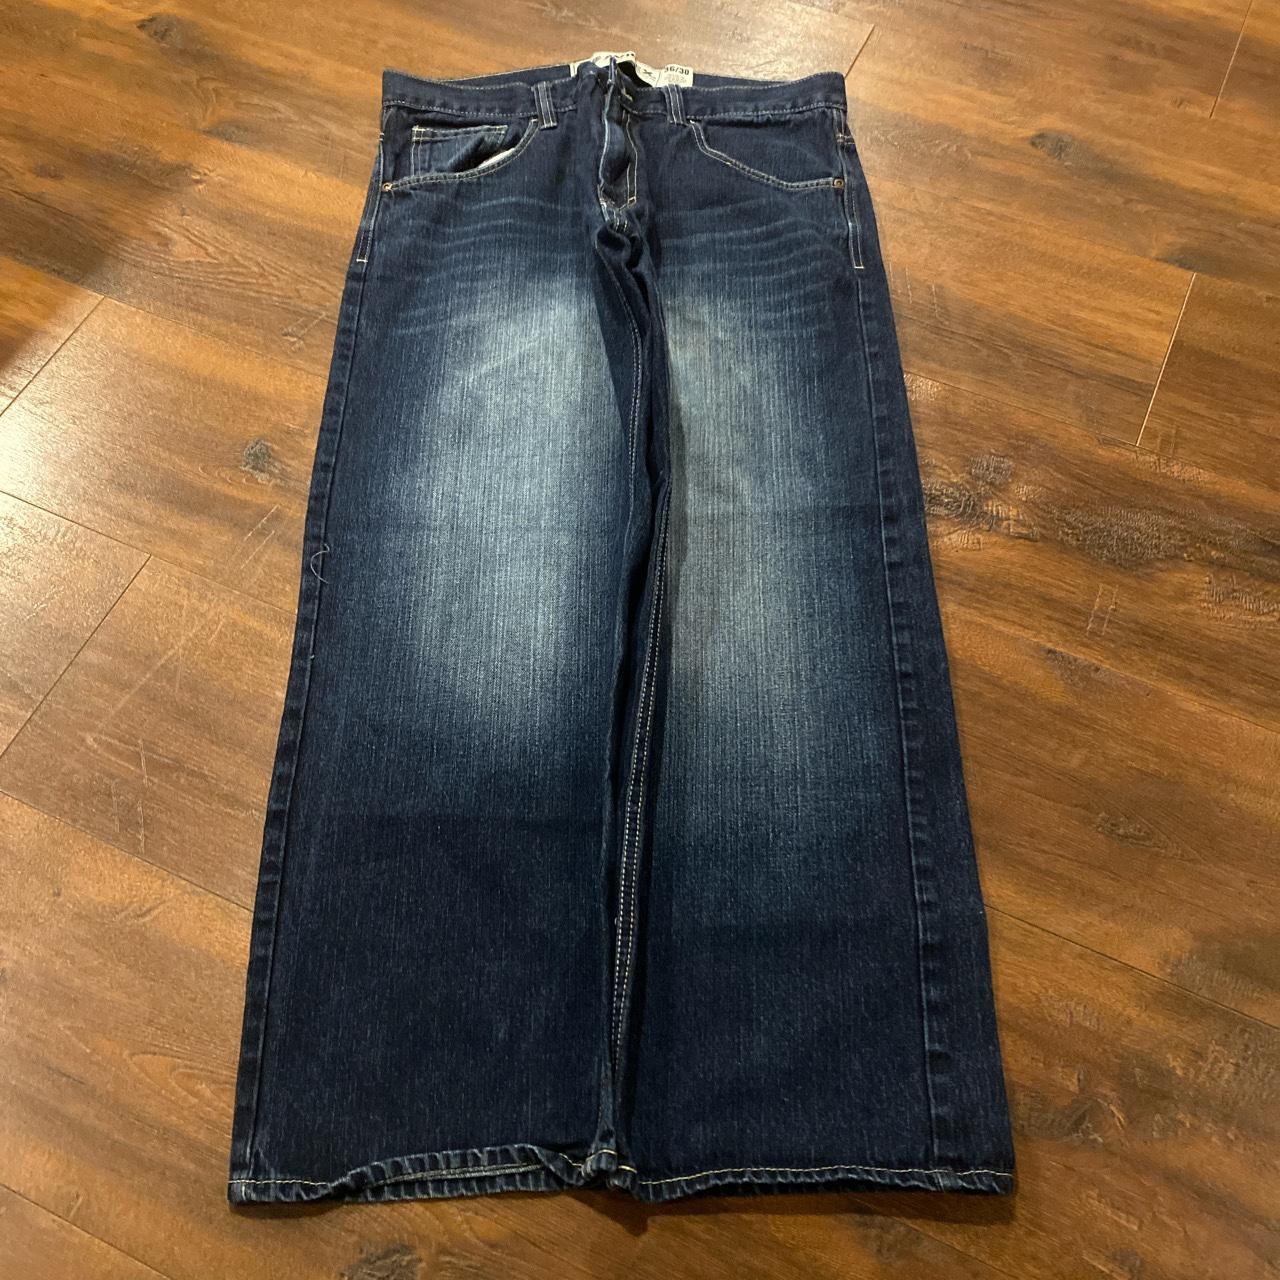 Baggy y2k Avirex jeans 36/28 10’ leg opening - Depop